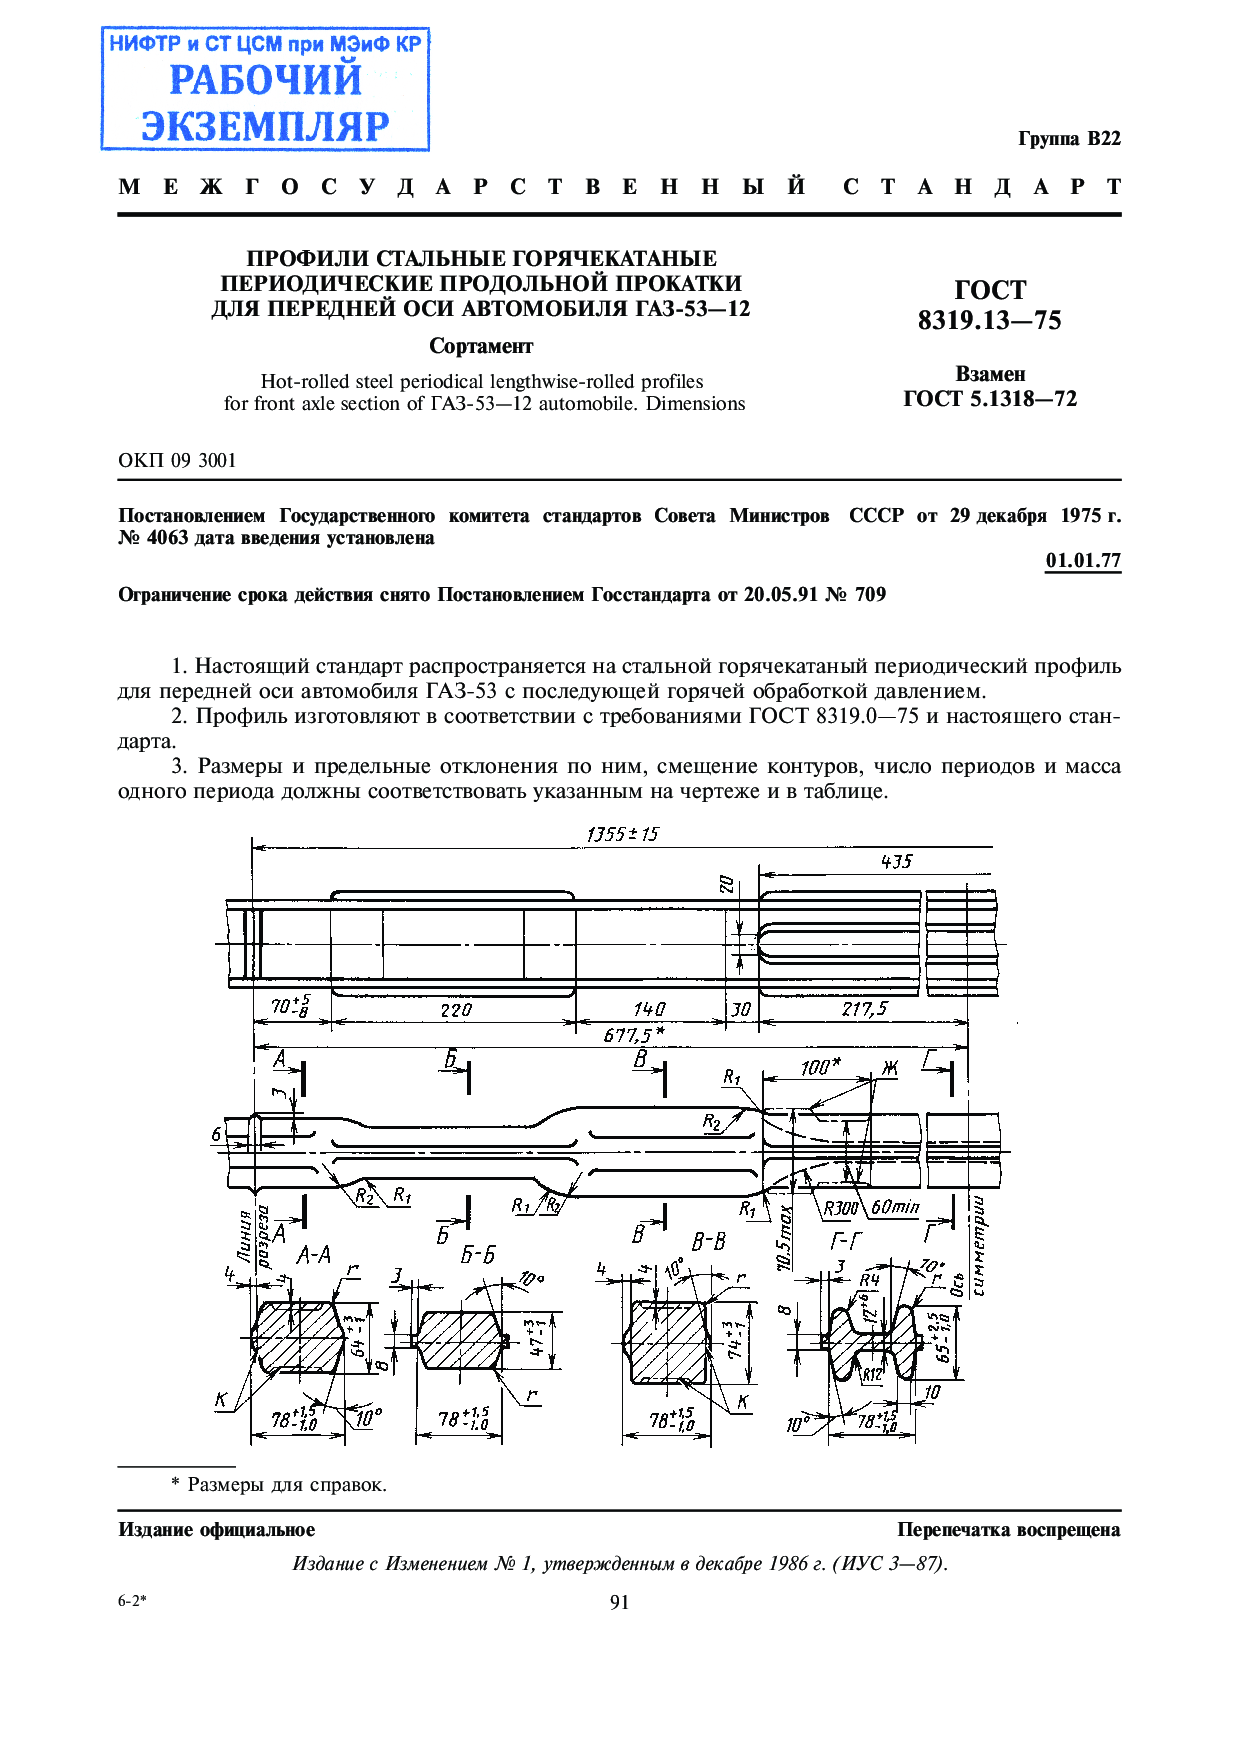 Профили стальные горячекатаные периодические продольной прокатки для передней оси автомобиля ГАЗ-53-12. Сортамент .